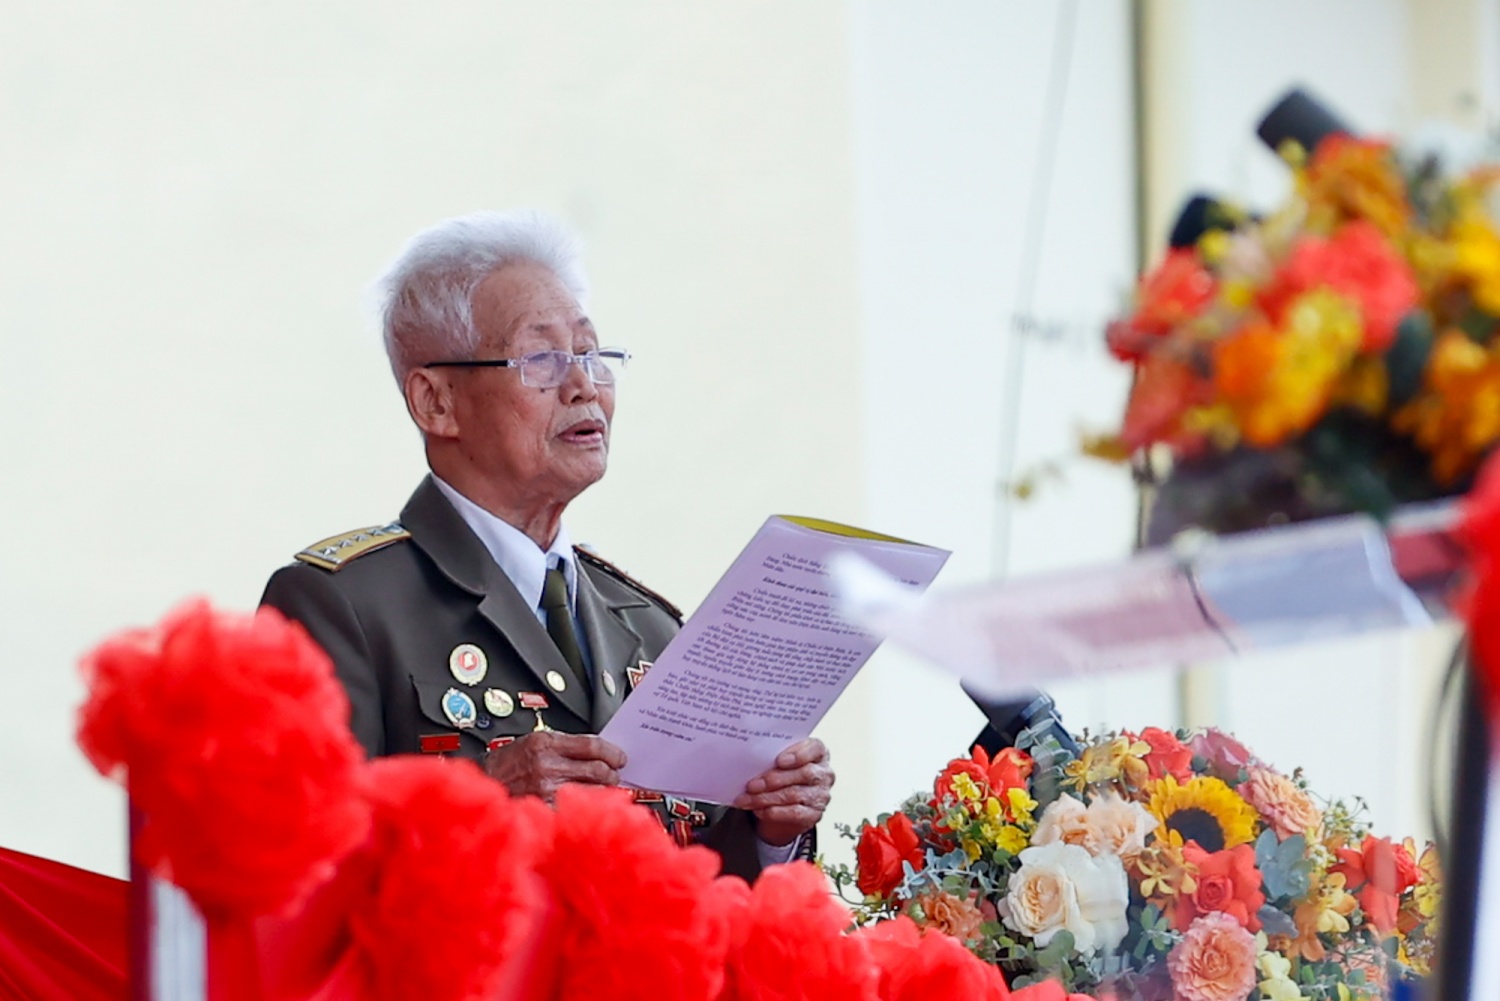 Cựu chiến binh Phạm Đức Cư, đại diện chiến sĩ Điện Biên và các lực lượng tham gia chiến dịch Điện Biên Phủ phát biểu tại buổi lễ - Ảnh: VGP/Nhật Bắc